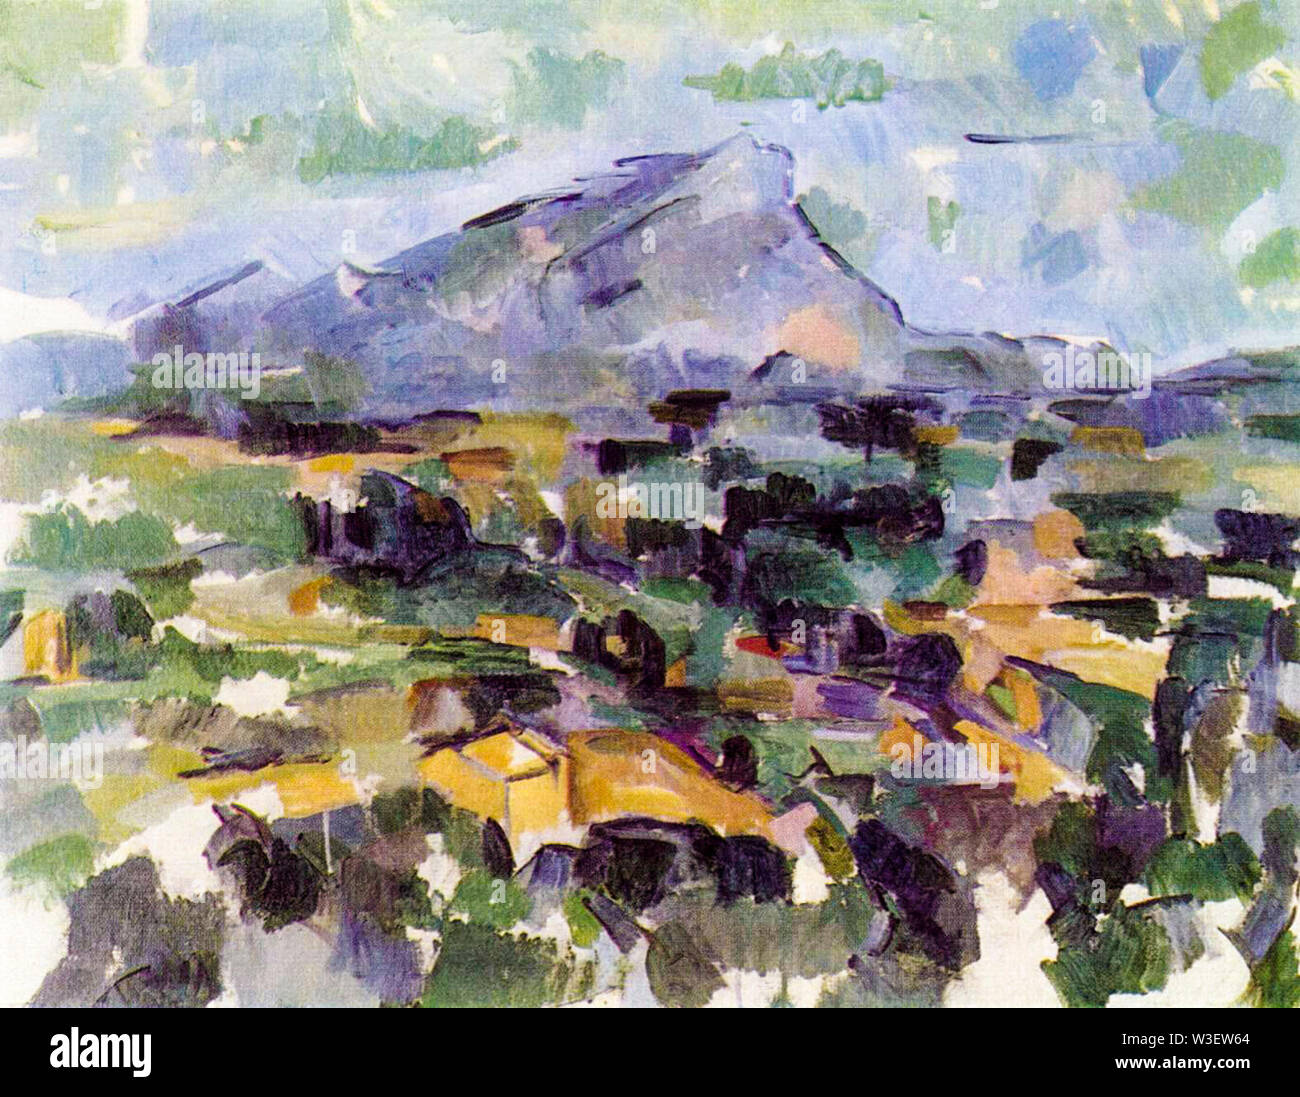 Paul Cézanne, la montagne Sainte-Victoire, la peinture de paysages, 1904-1906 Banque D'Images